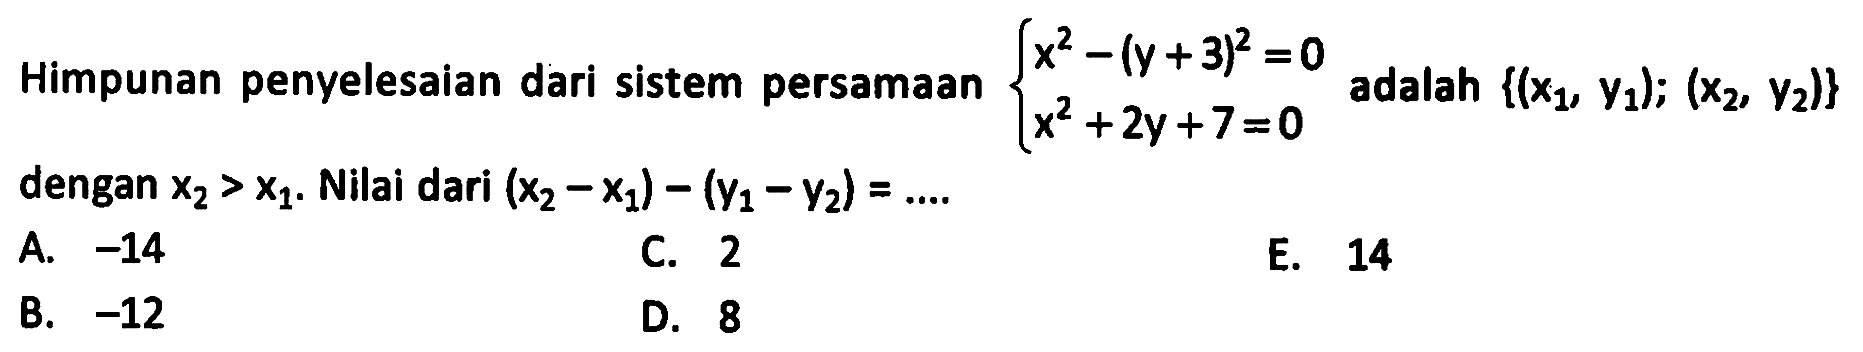 Himpunan penyelesaian dari sistem persamaan x^2-(y+3)^2=0 x^2+2y+7=0 adalah {(x1, y1); (x2, y2)} dengan x2 > x1. Nilai dari (x2-x1)-(y1-y2)= ....